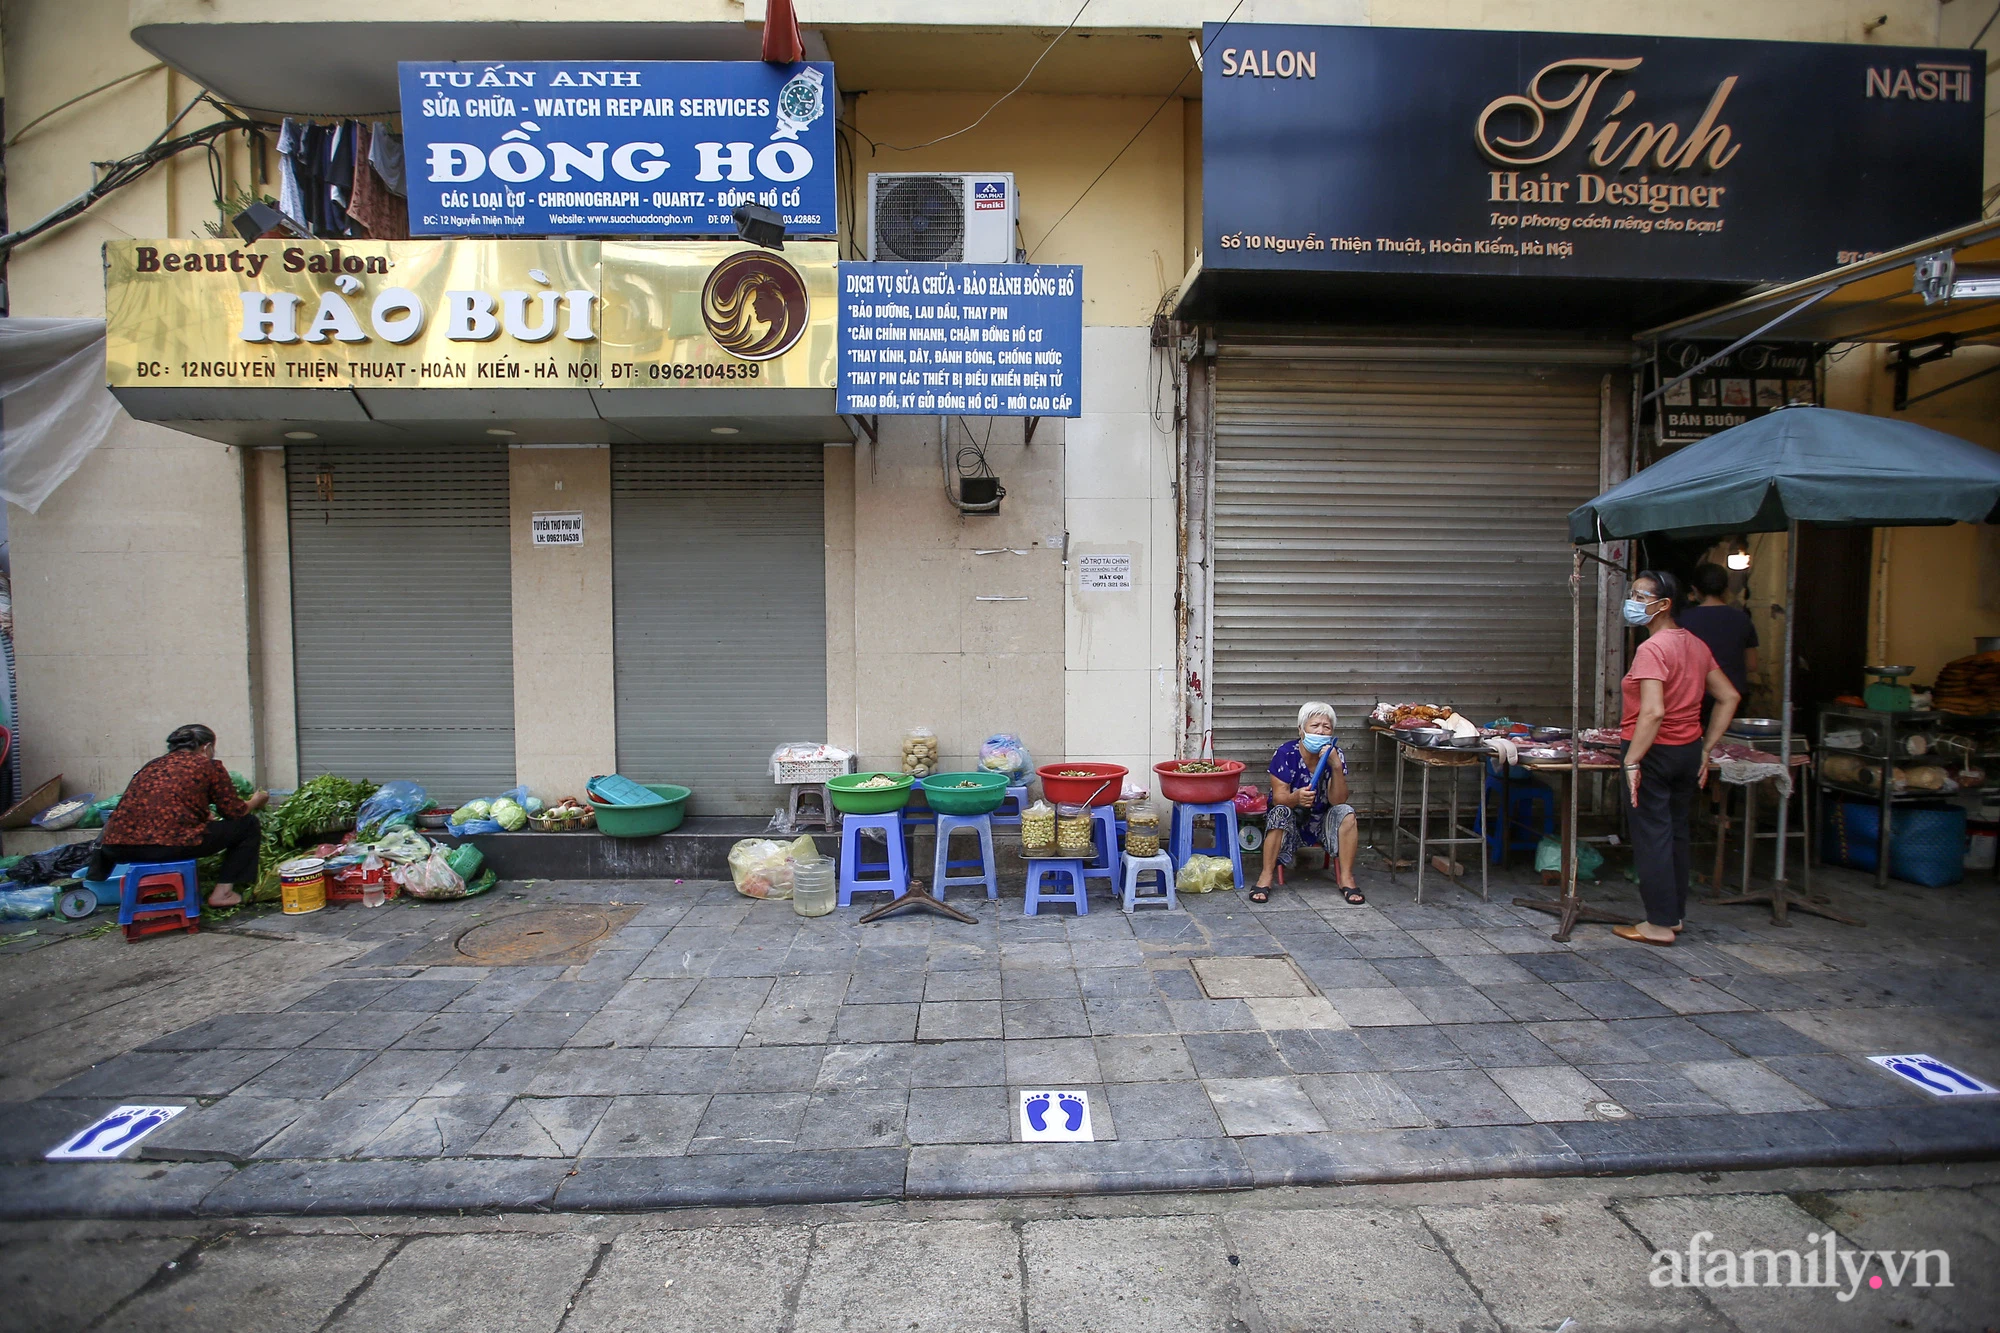 Ngày đầu giãn cách theo Chỉ thị 16, khu chợ ở Hà Nội kẻ vạch cách nhau 2 m, người mua kẻ bán tuy xa mặt nhưng không cách lòng - Ảnh 8.